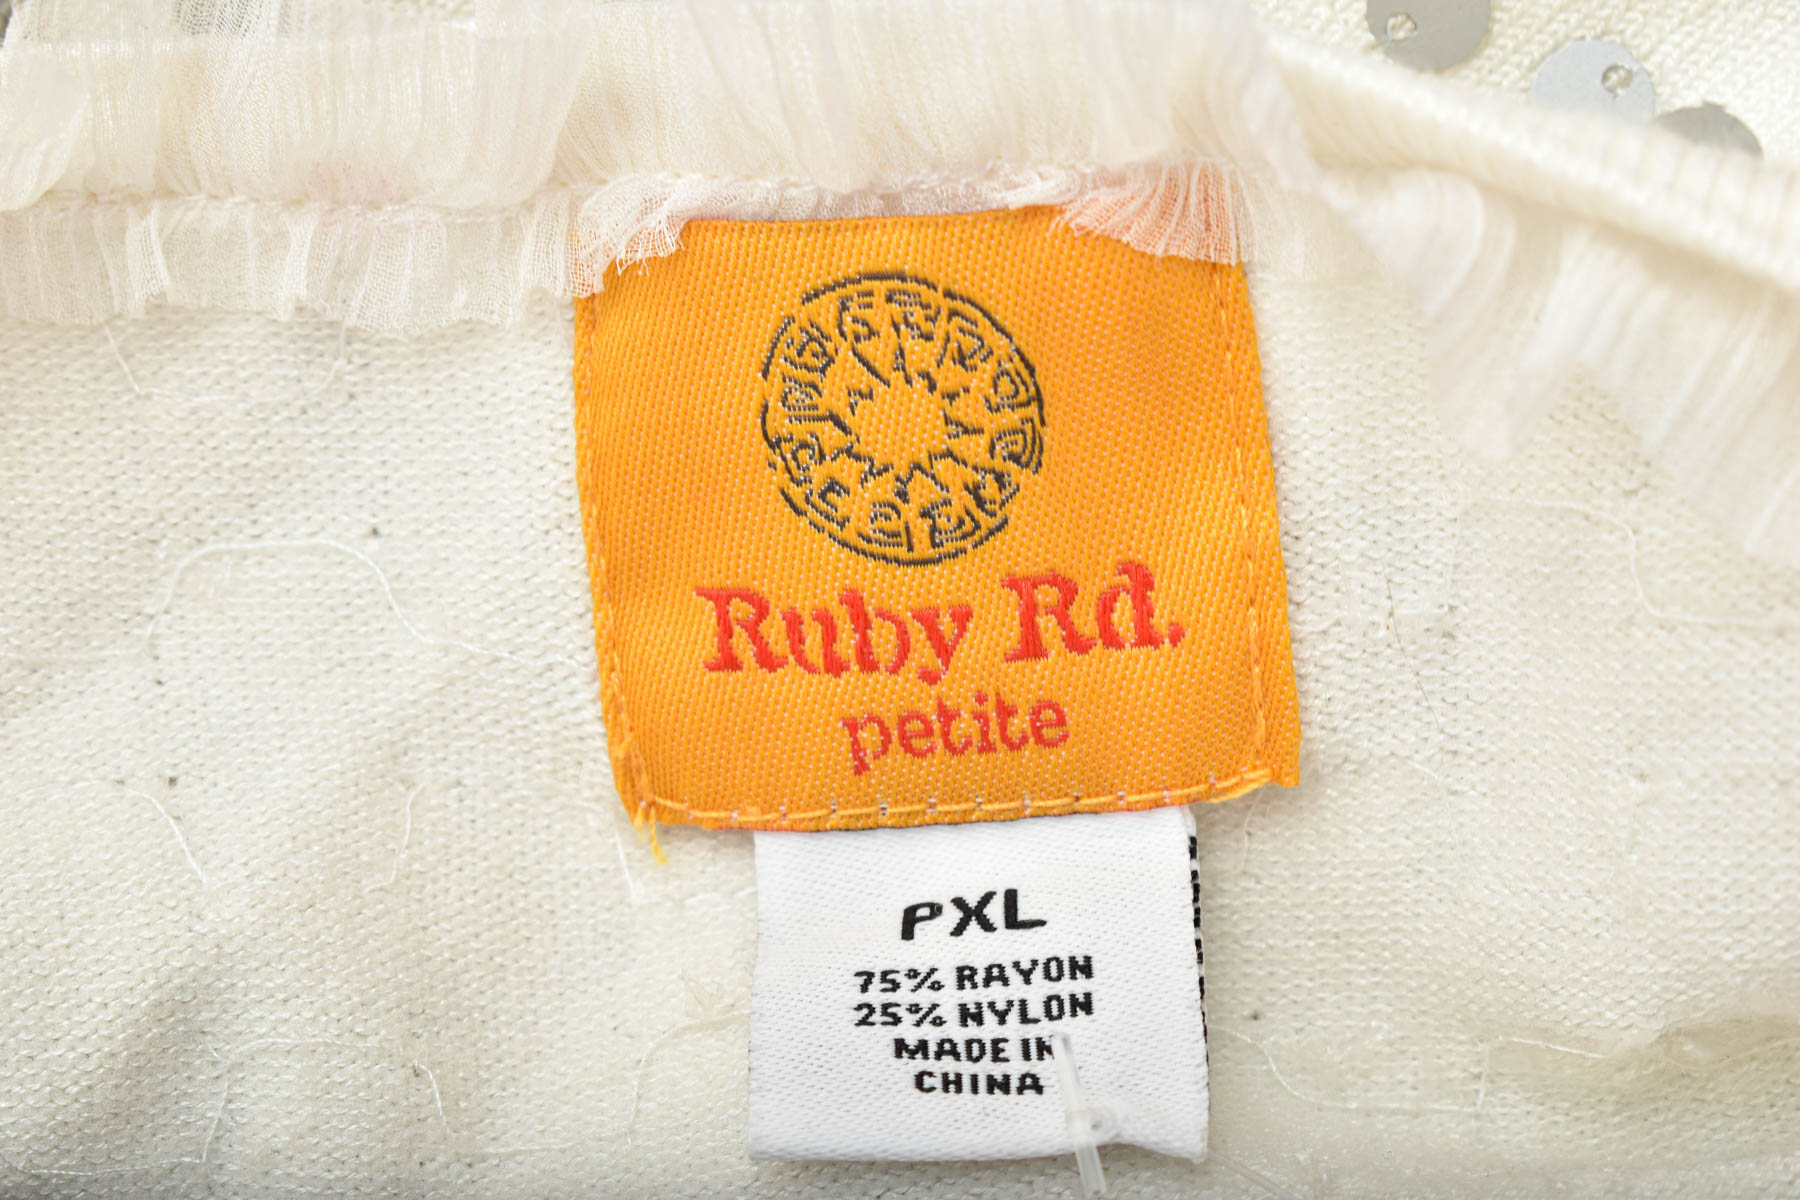 Cardigan / Jachetă de damă - Ruby Rd. petite - 2